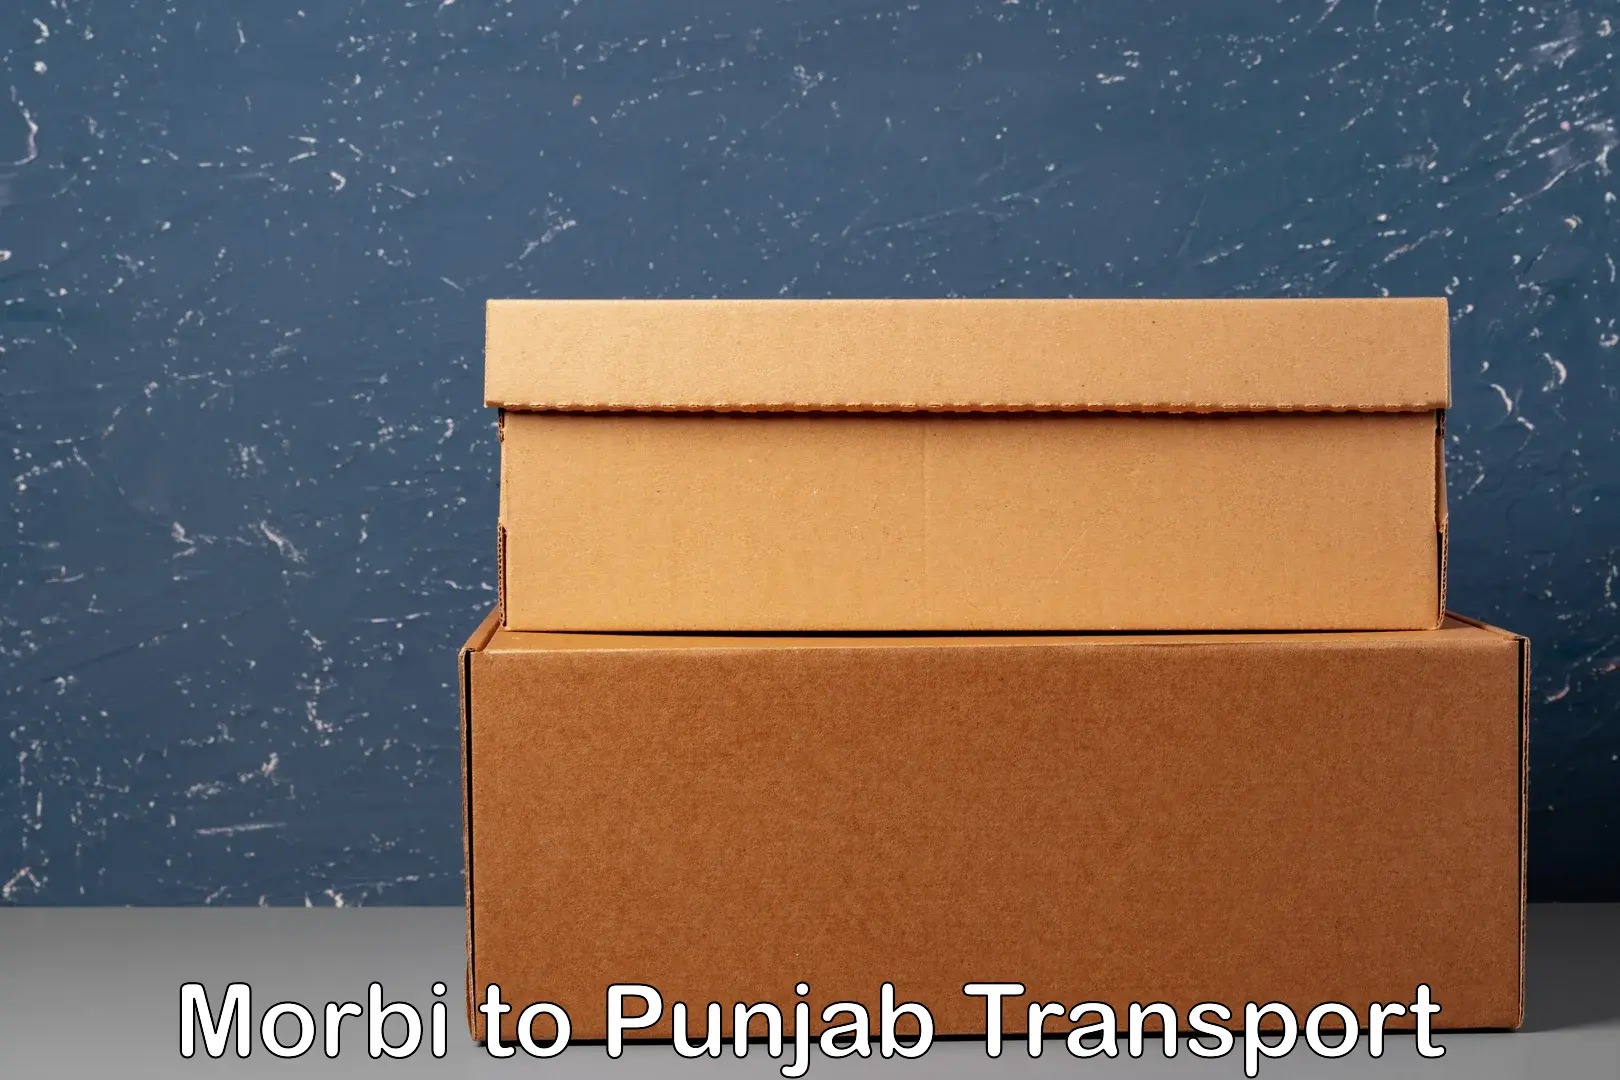 Cycle transportation service Morbi to Punjab